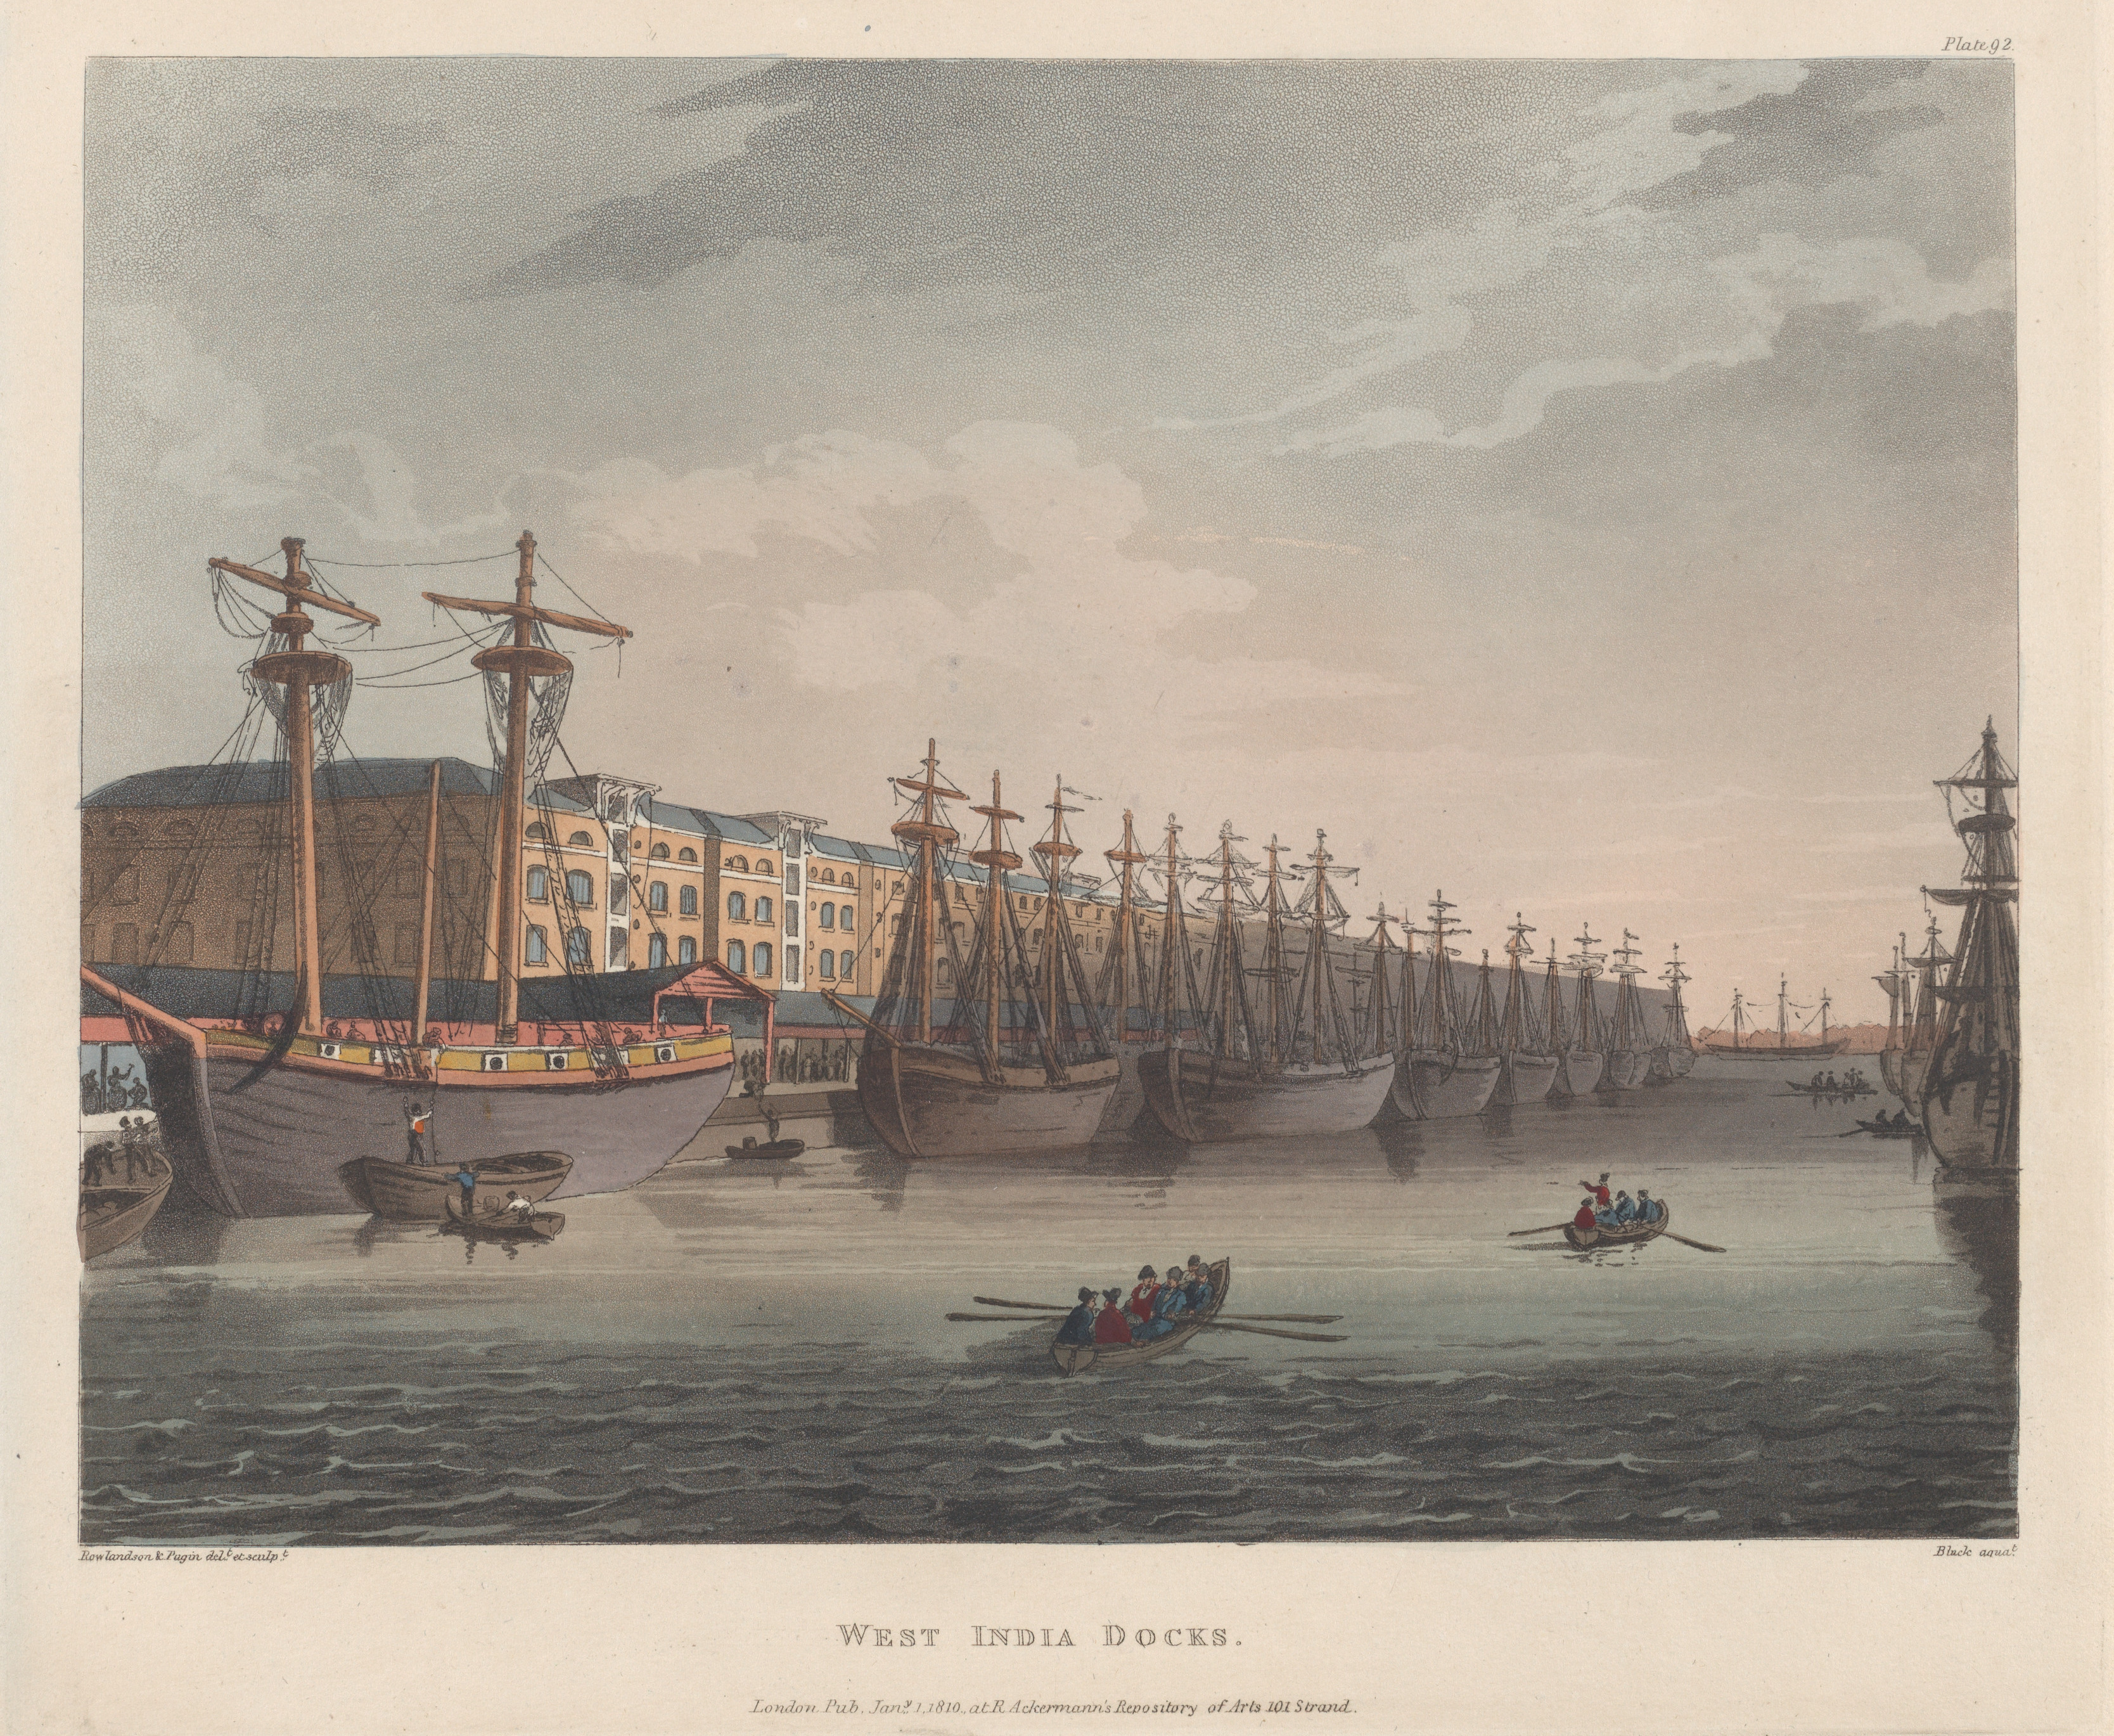 Англия начала 17 века. Англия 16 век ОСТ Индская компания. ОСТ-Индская компания 17 век. ОСТ Индская компания 18 век. Корабль 19 век Вест Индская компания.